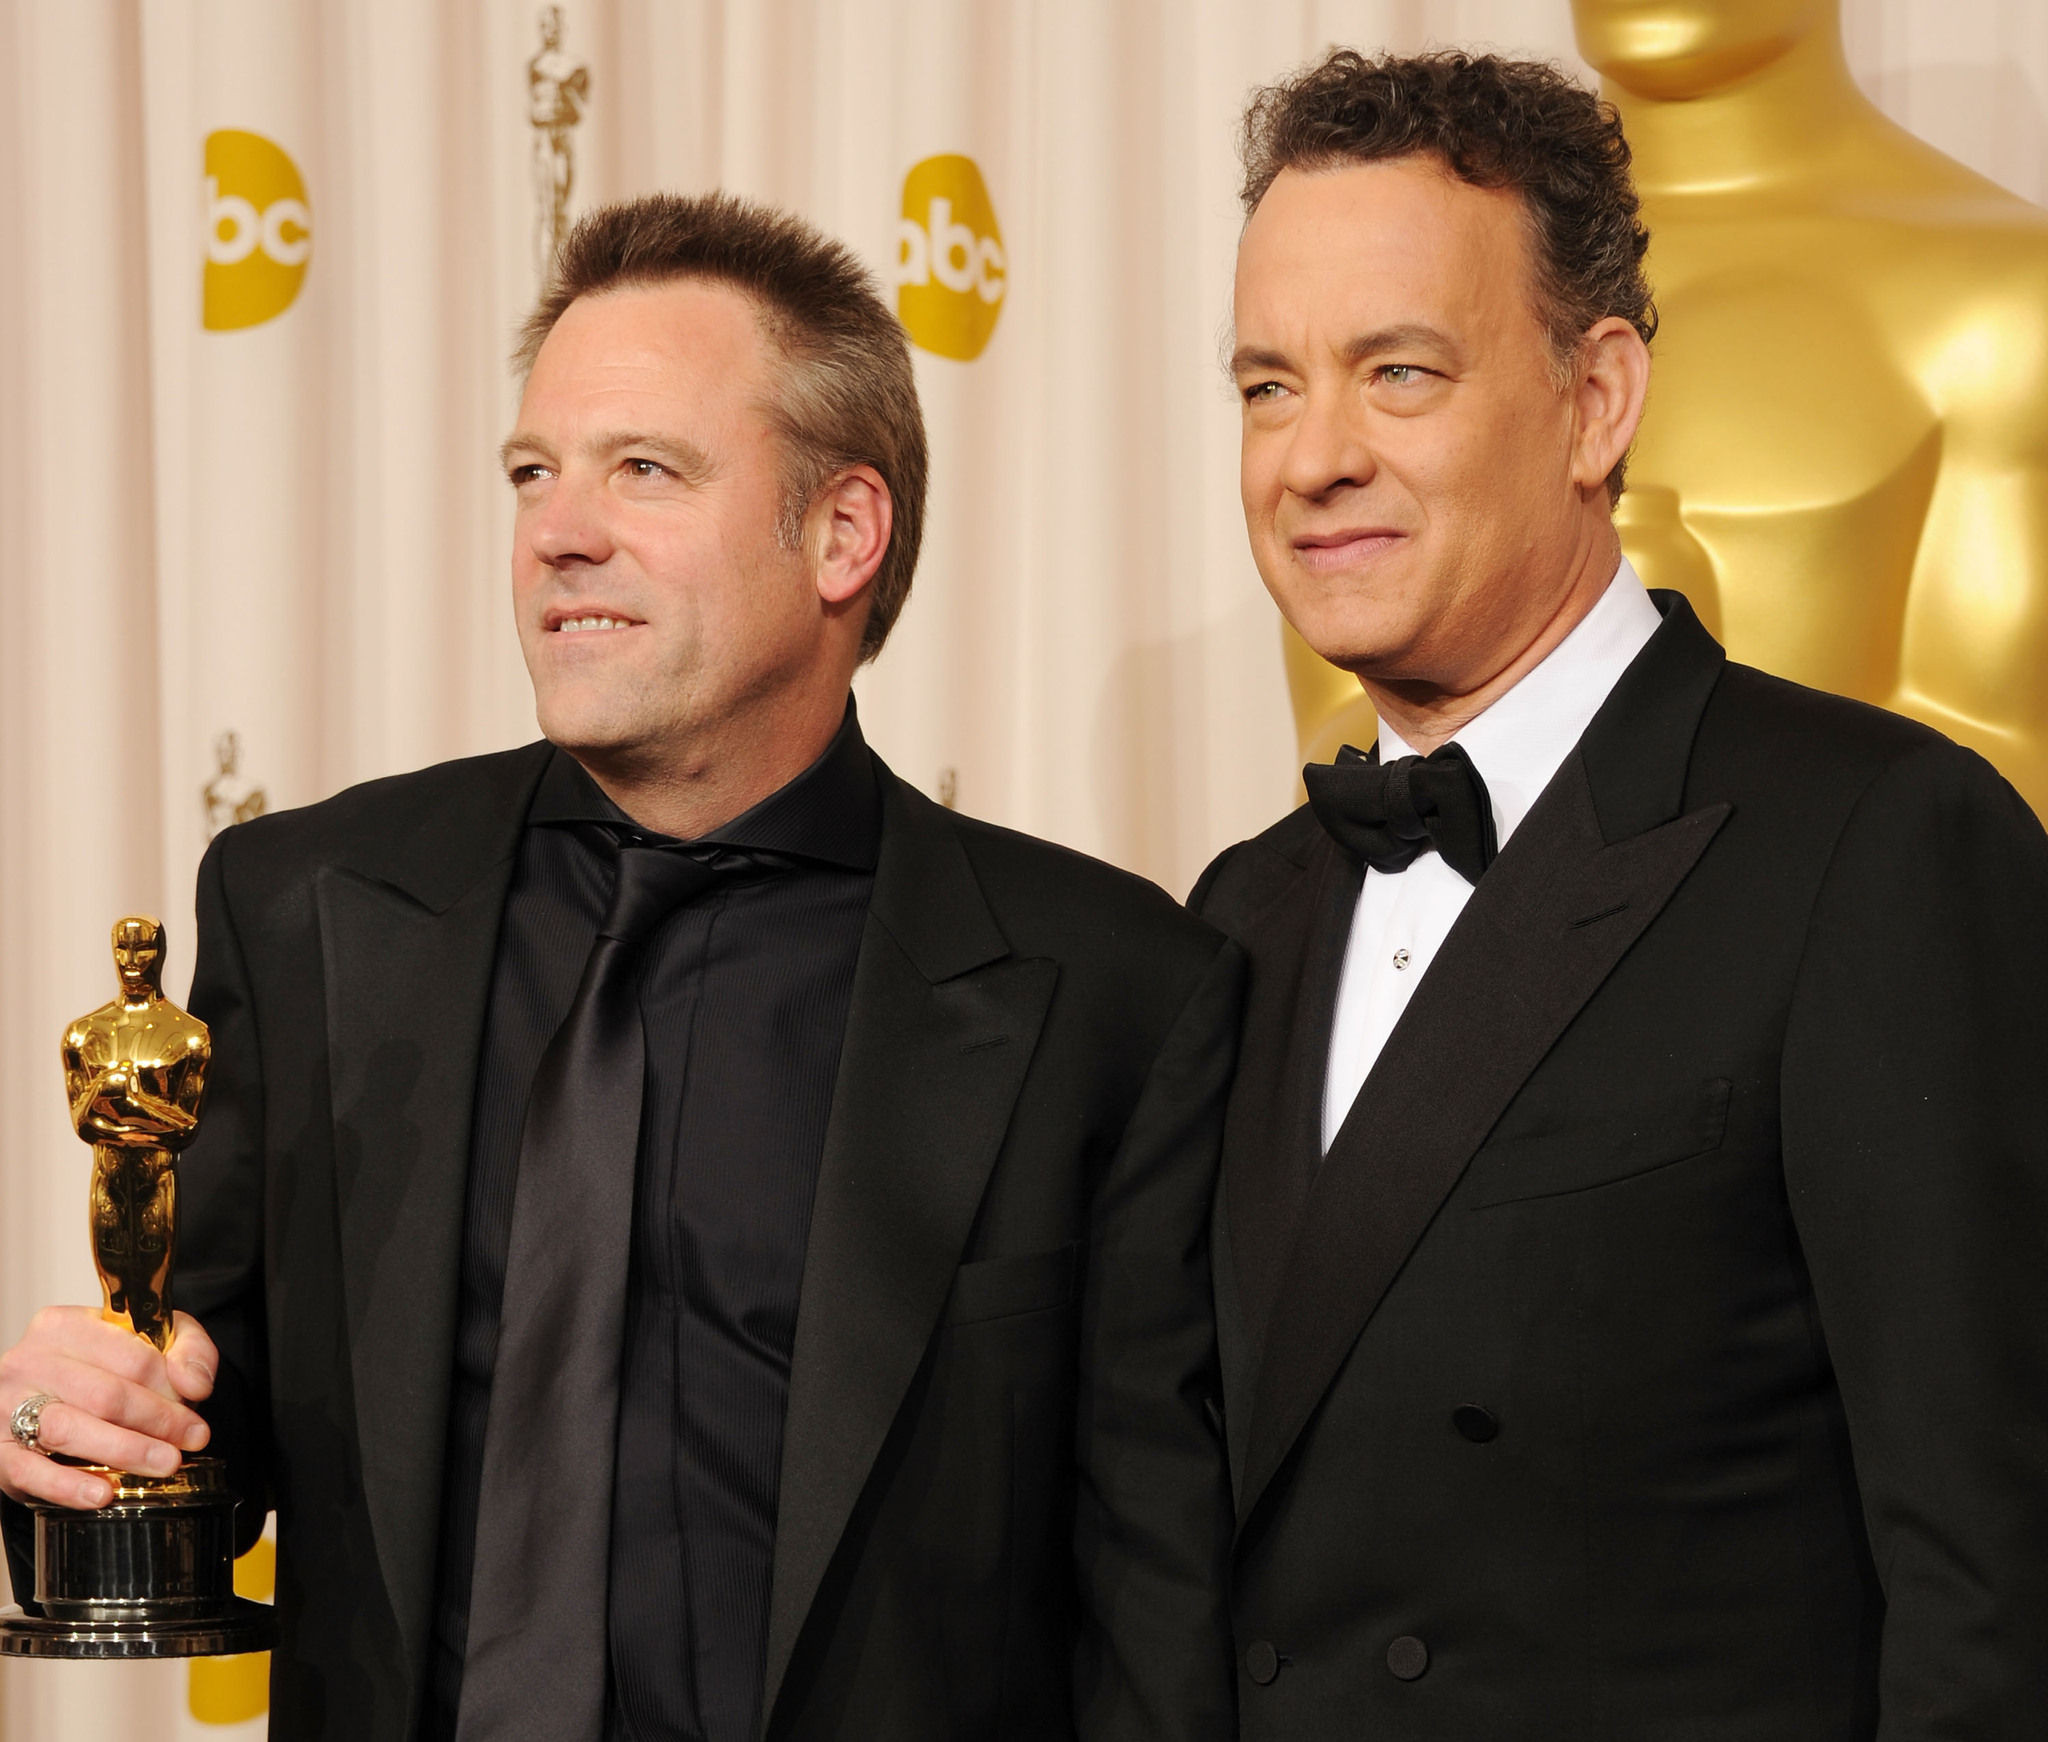 Tom Hanks and Wally Pfister